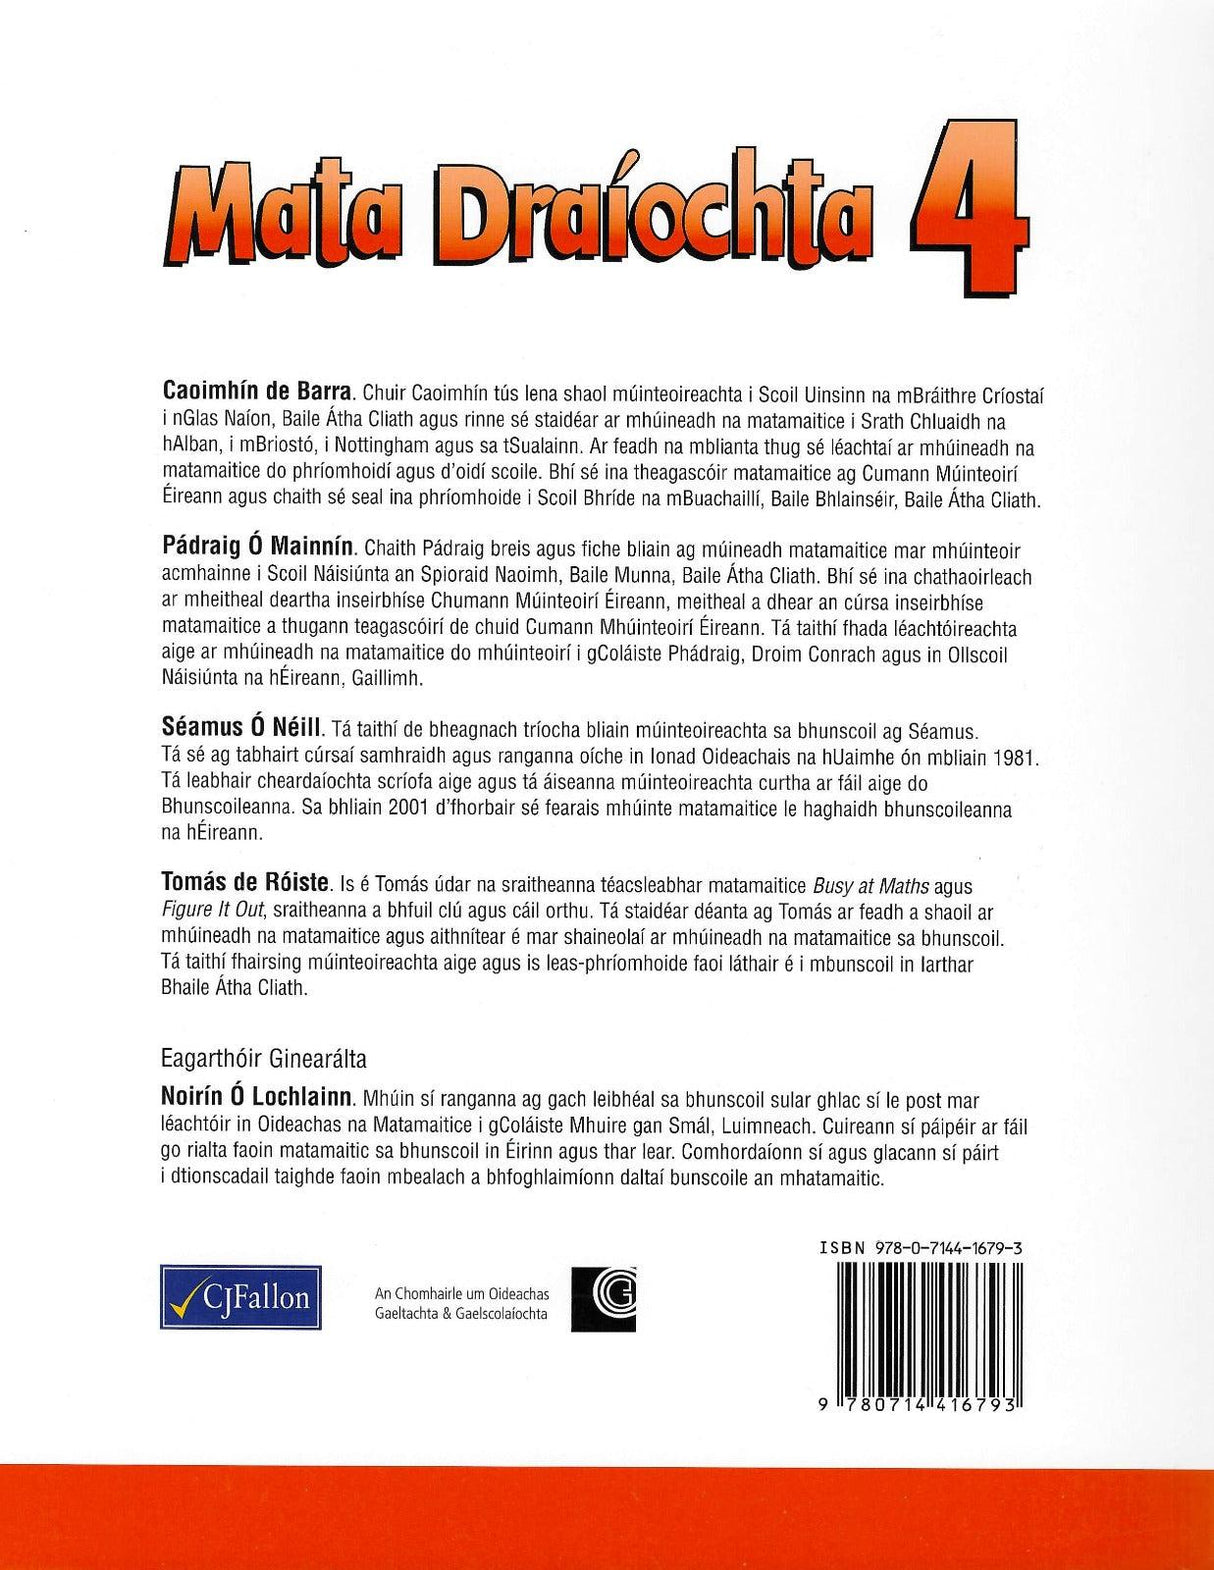 Mata Draíochta 4 by CJ Fallon on Schoolbooks.ie